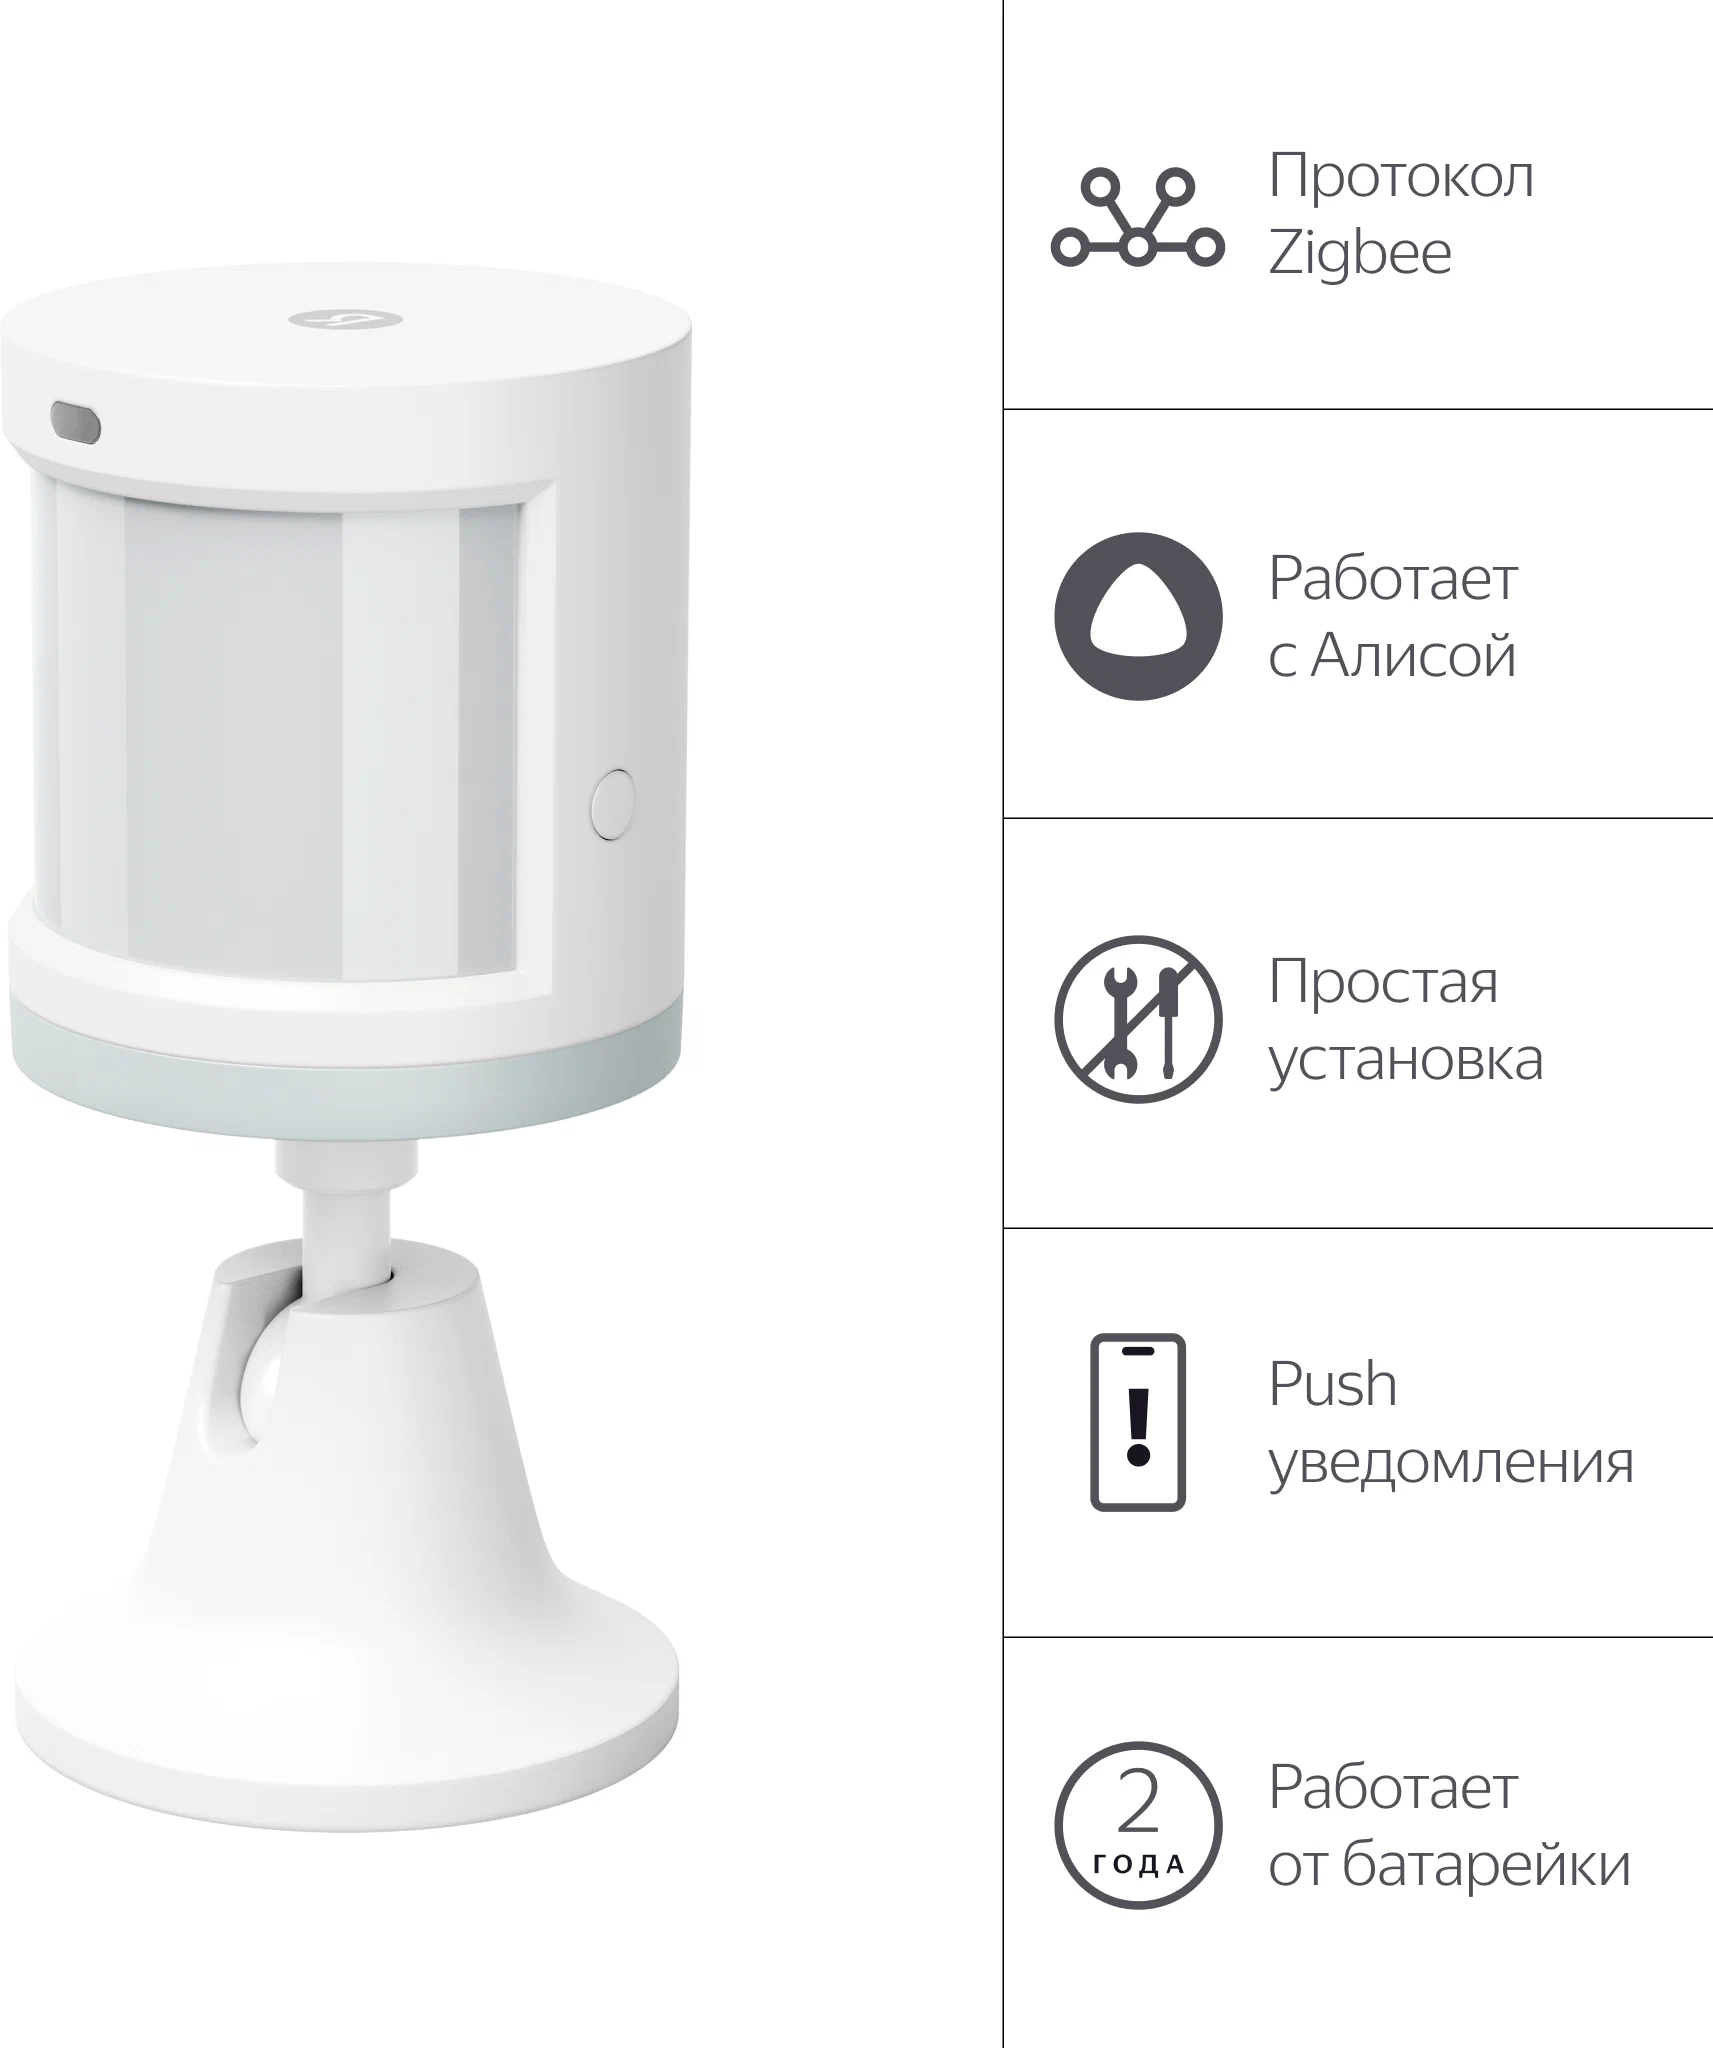 Яндекс Датчик движения и освещения с Zigbee